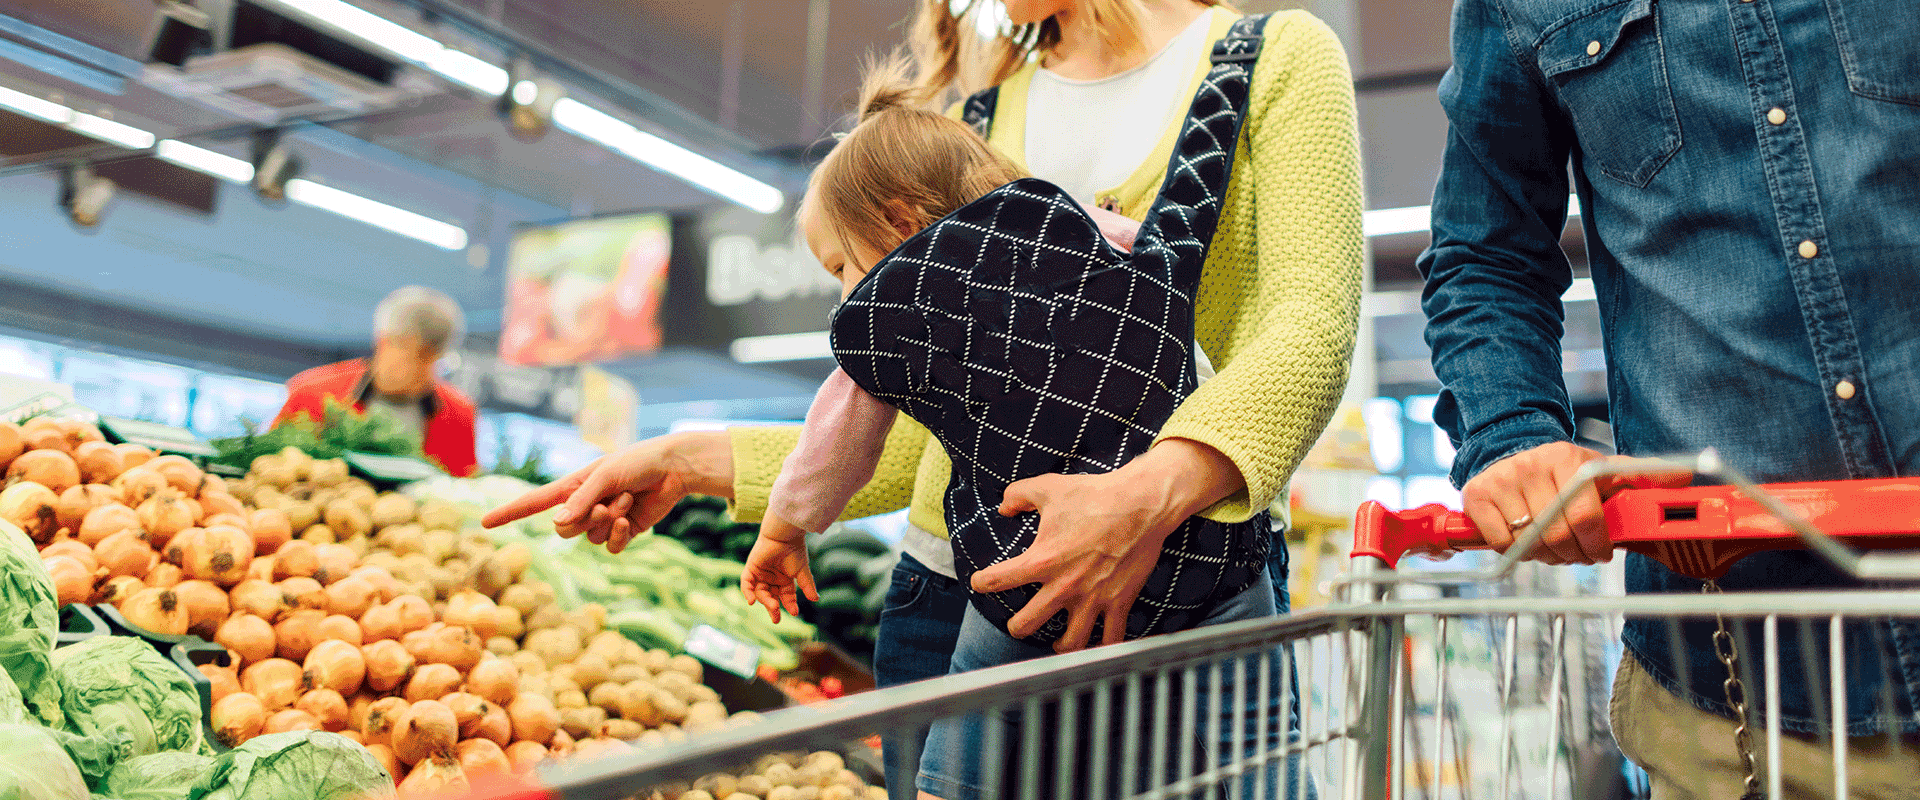 grocery shopping spending